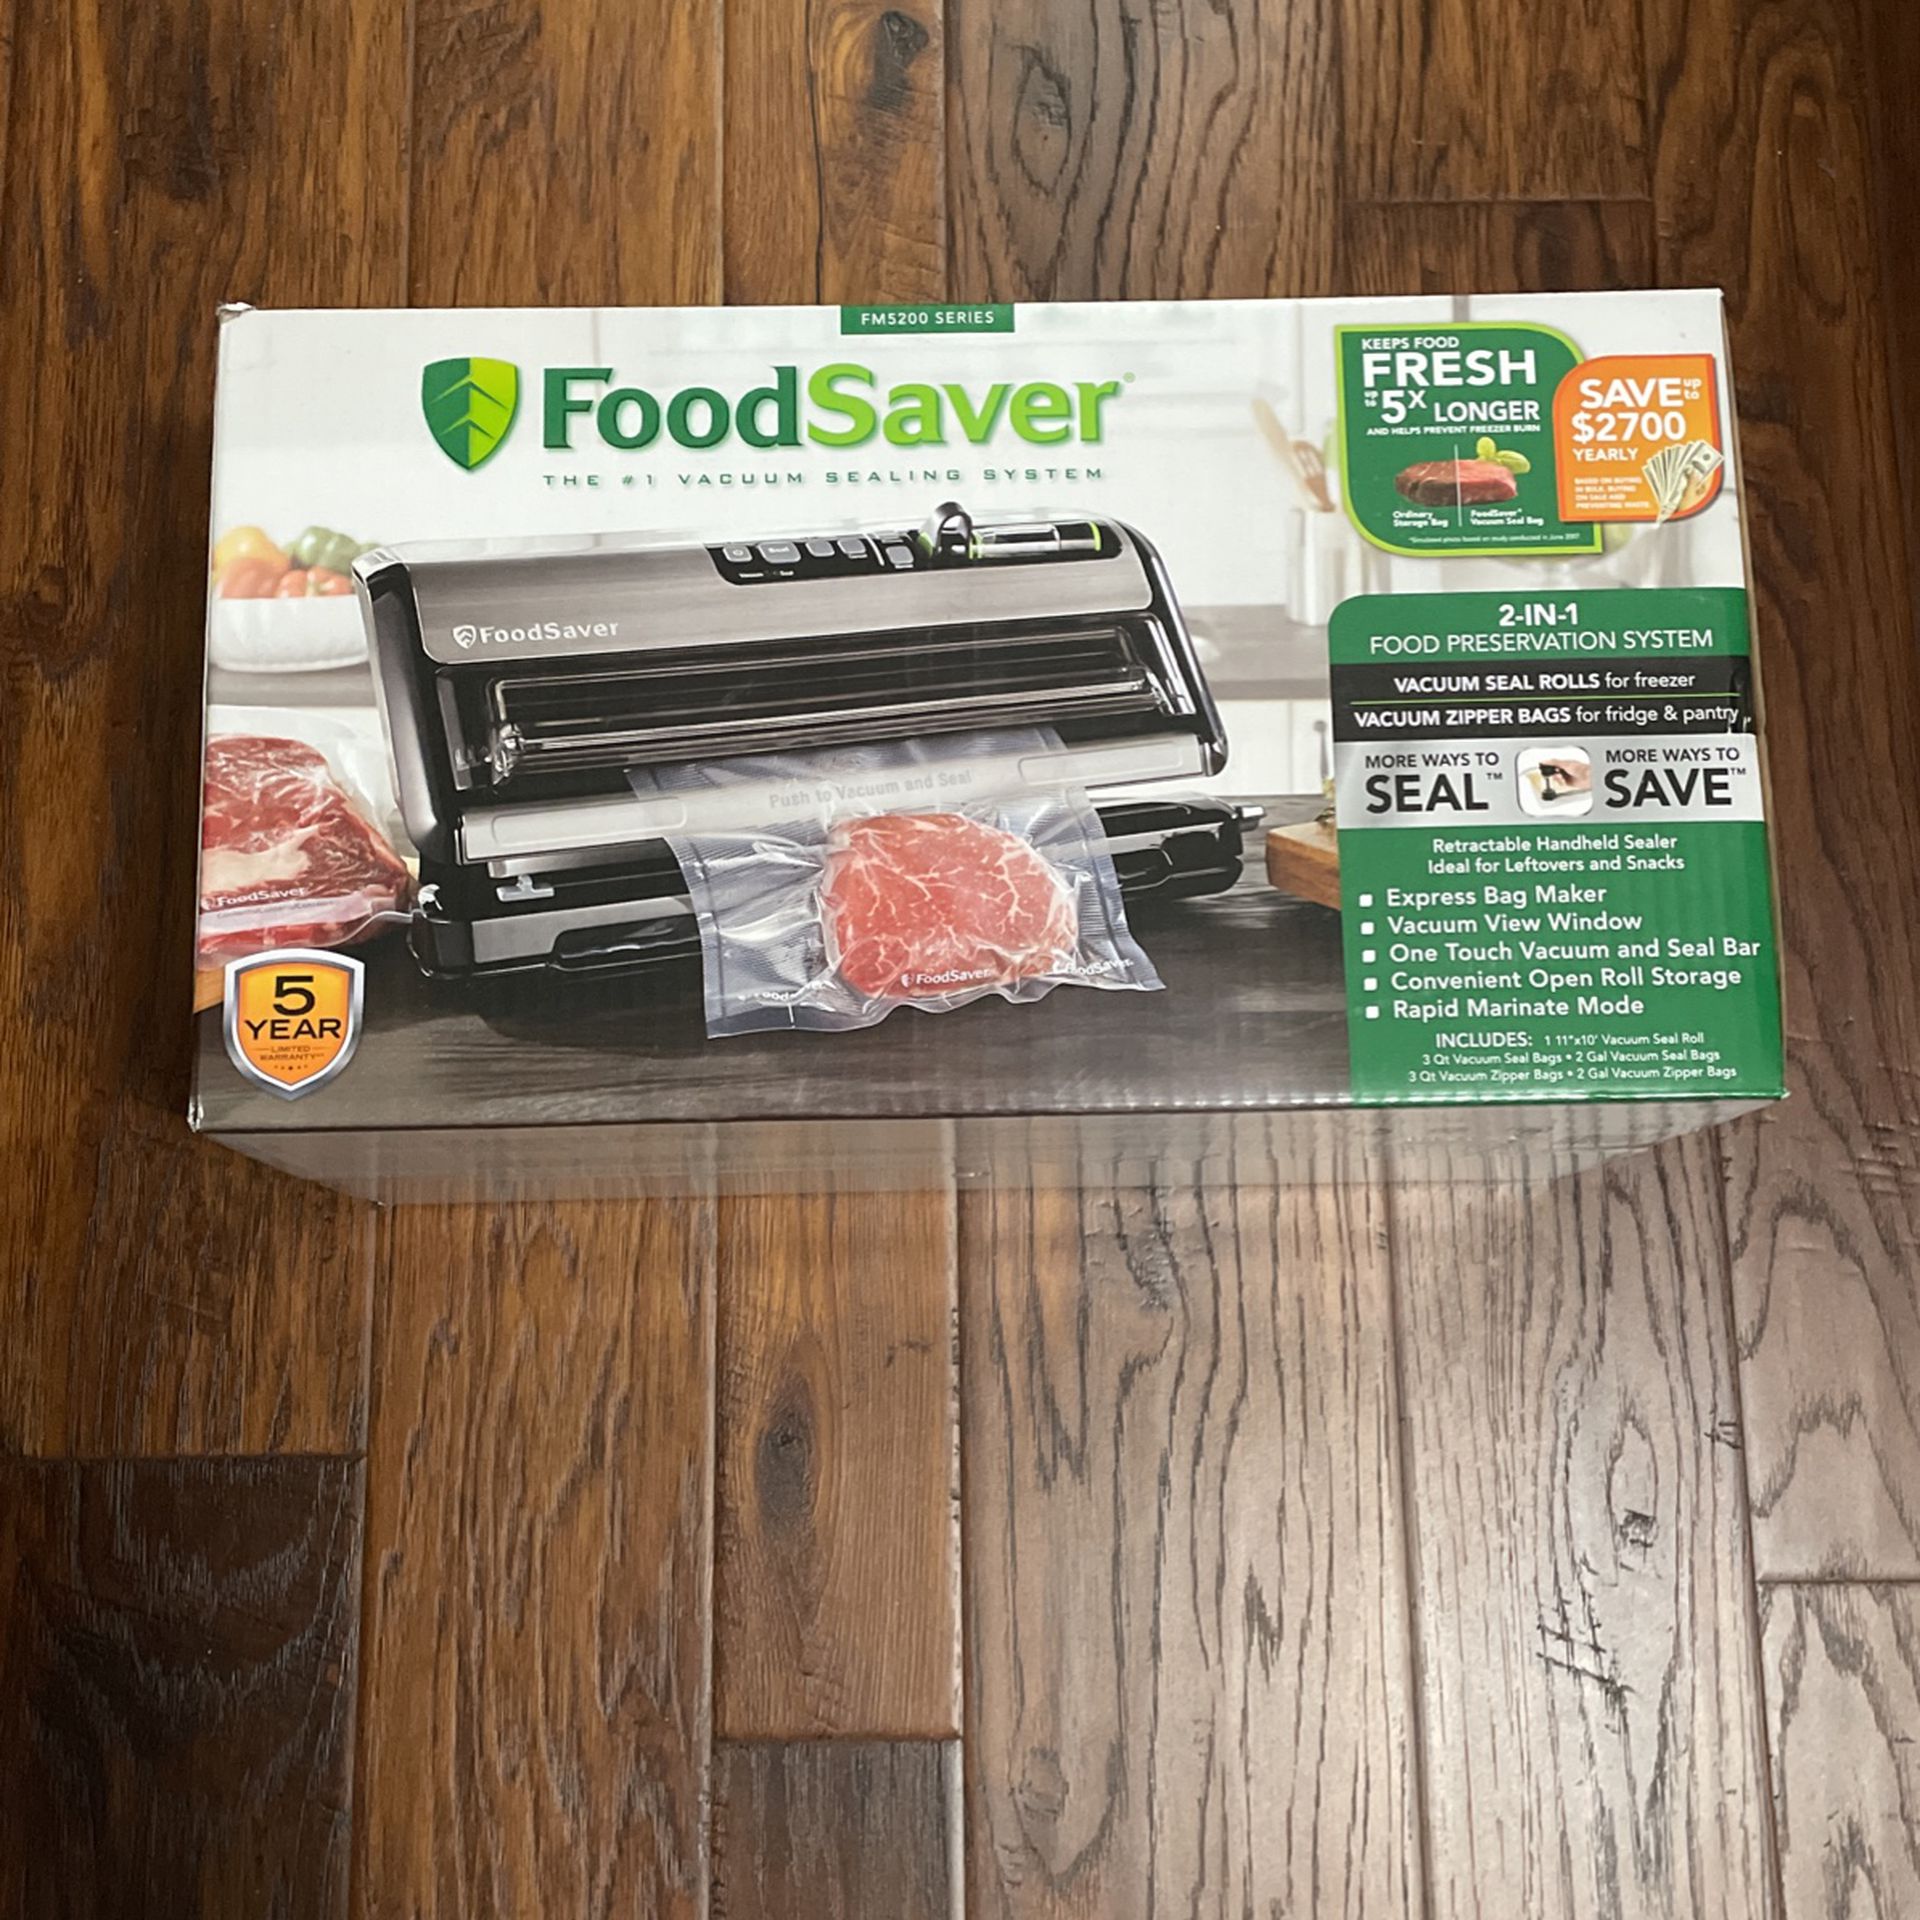 FoodSaver® FM 5200 Vacuum Sealer